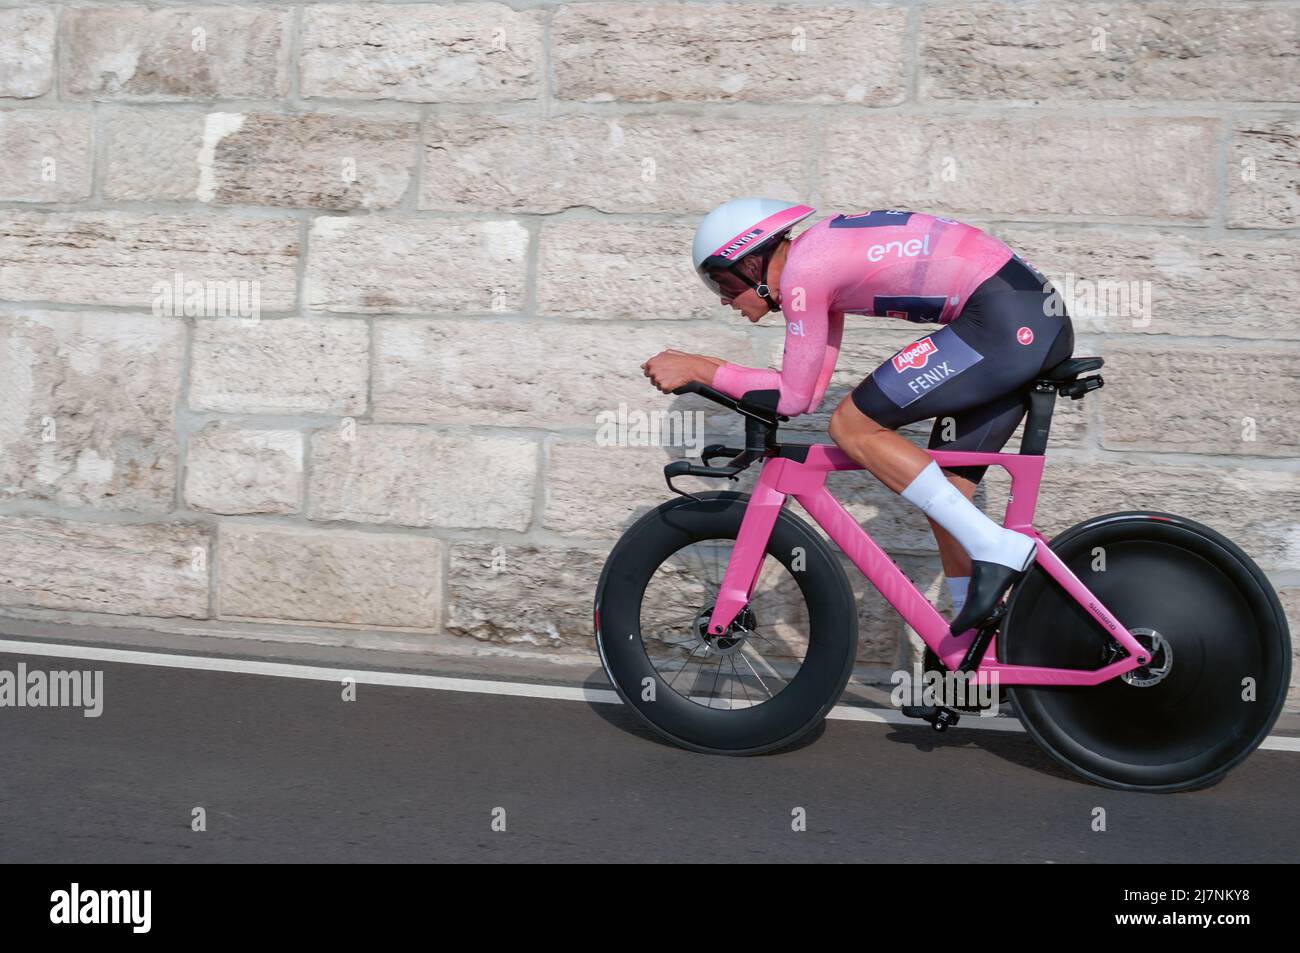 BUDAPEST, UNGARN - MAI 0- 7, 2022: Profi-Radfahrer Mathieu van der Poel ALPECIN-FENIX Giro D'Italia Etappe 2 Zeitfahren - Radrennen am 0. Mai Stockfoto